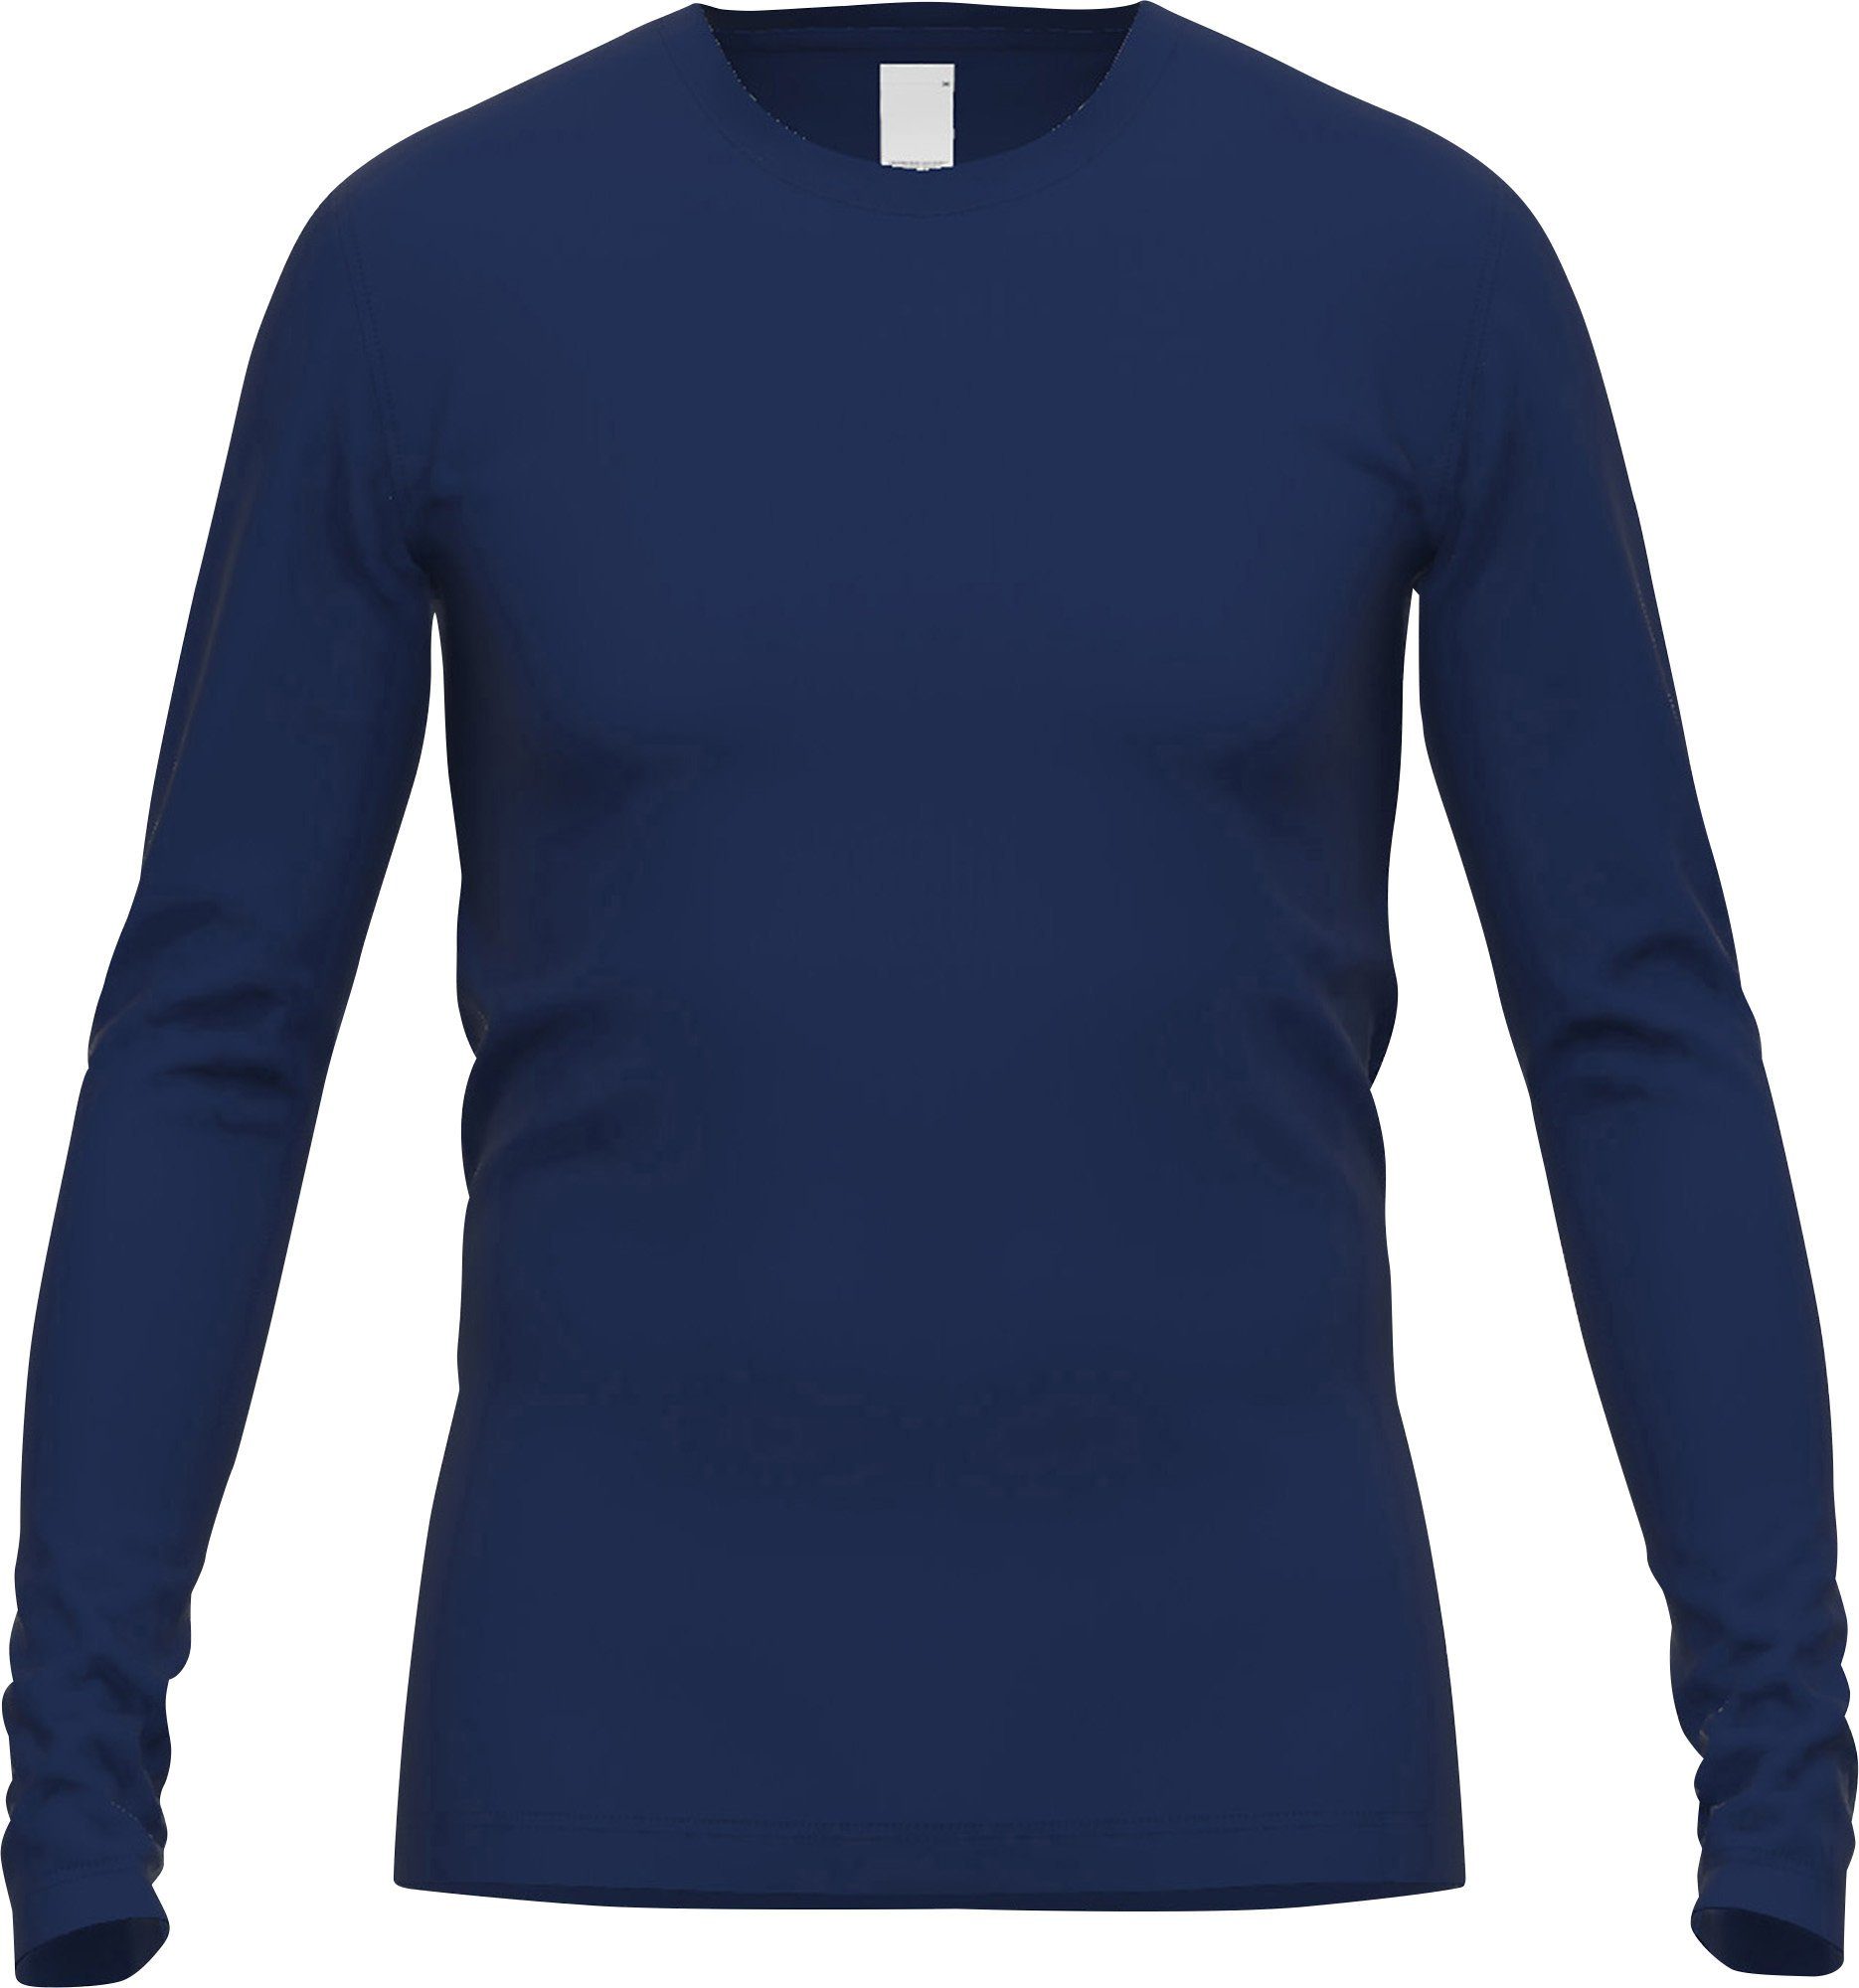 GÖTZBURG Unterhemd Herren-Thermo-Unterhemd, langarm Interlock-Jersey Uni blau-dunkel | Unterhemden